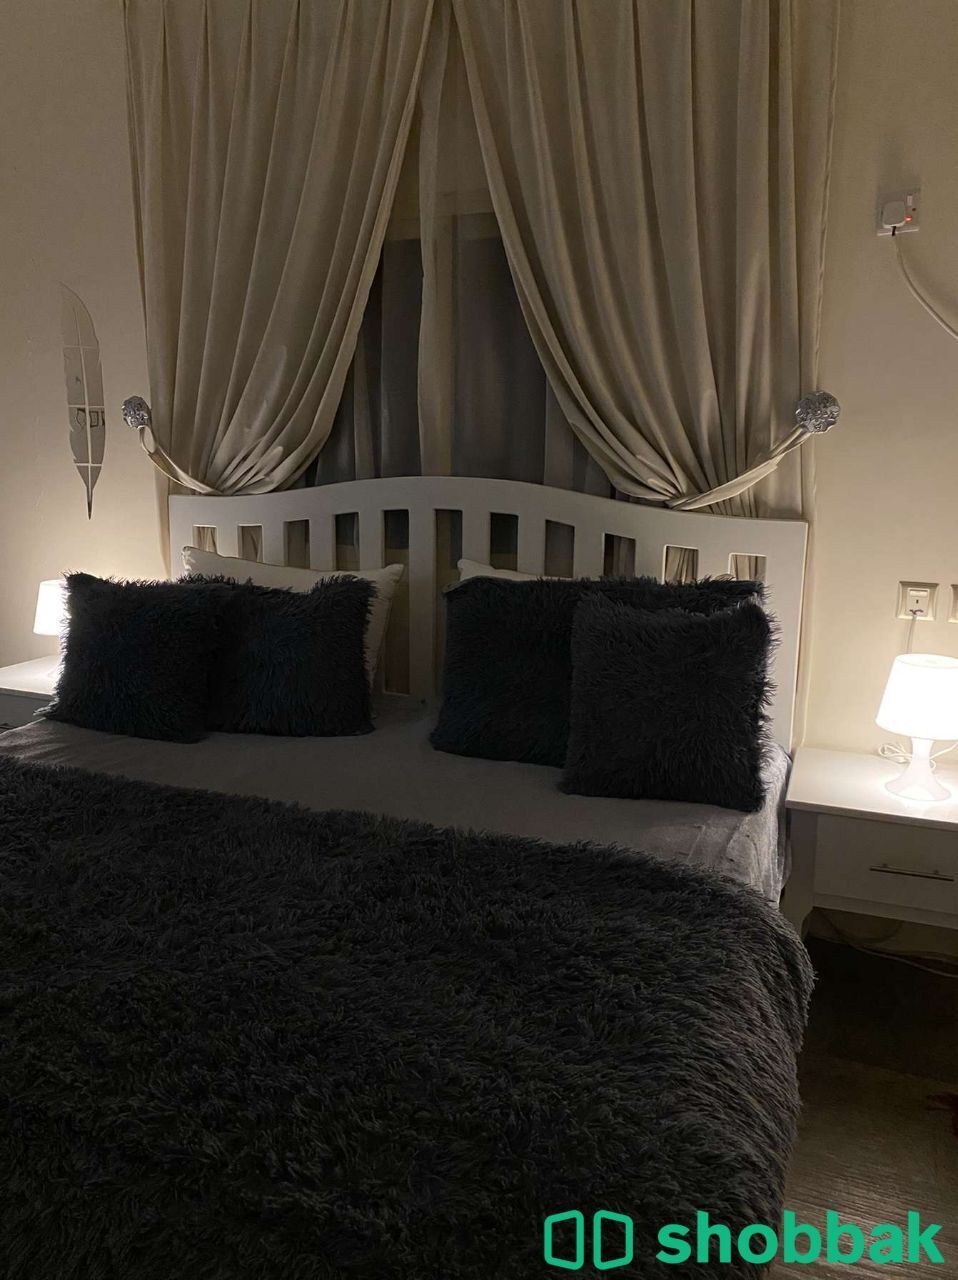 غرفة نوم كاملة للبيع  شباك السعودية